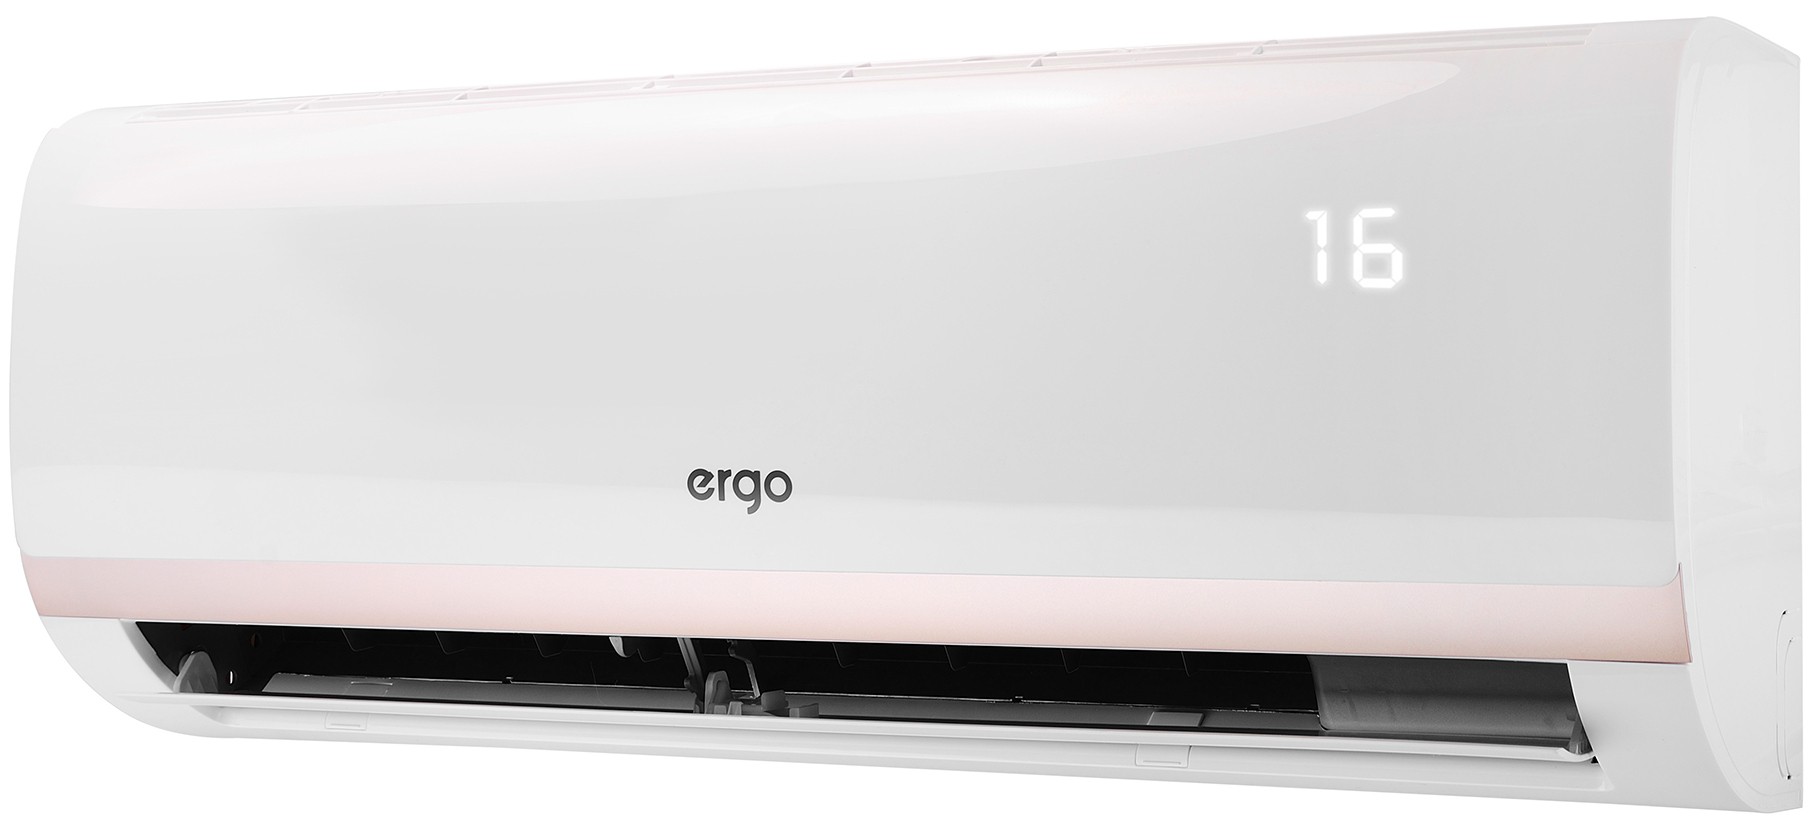 Кондиционер сплит-система Ergo ACI 0910 CH отзывы - изображения 5